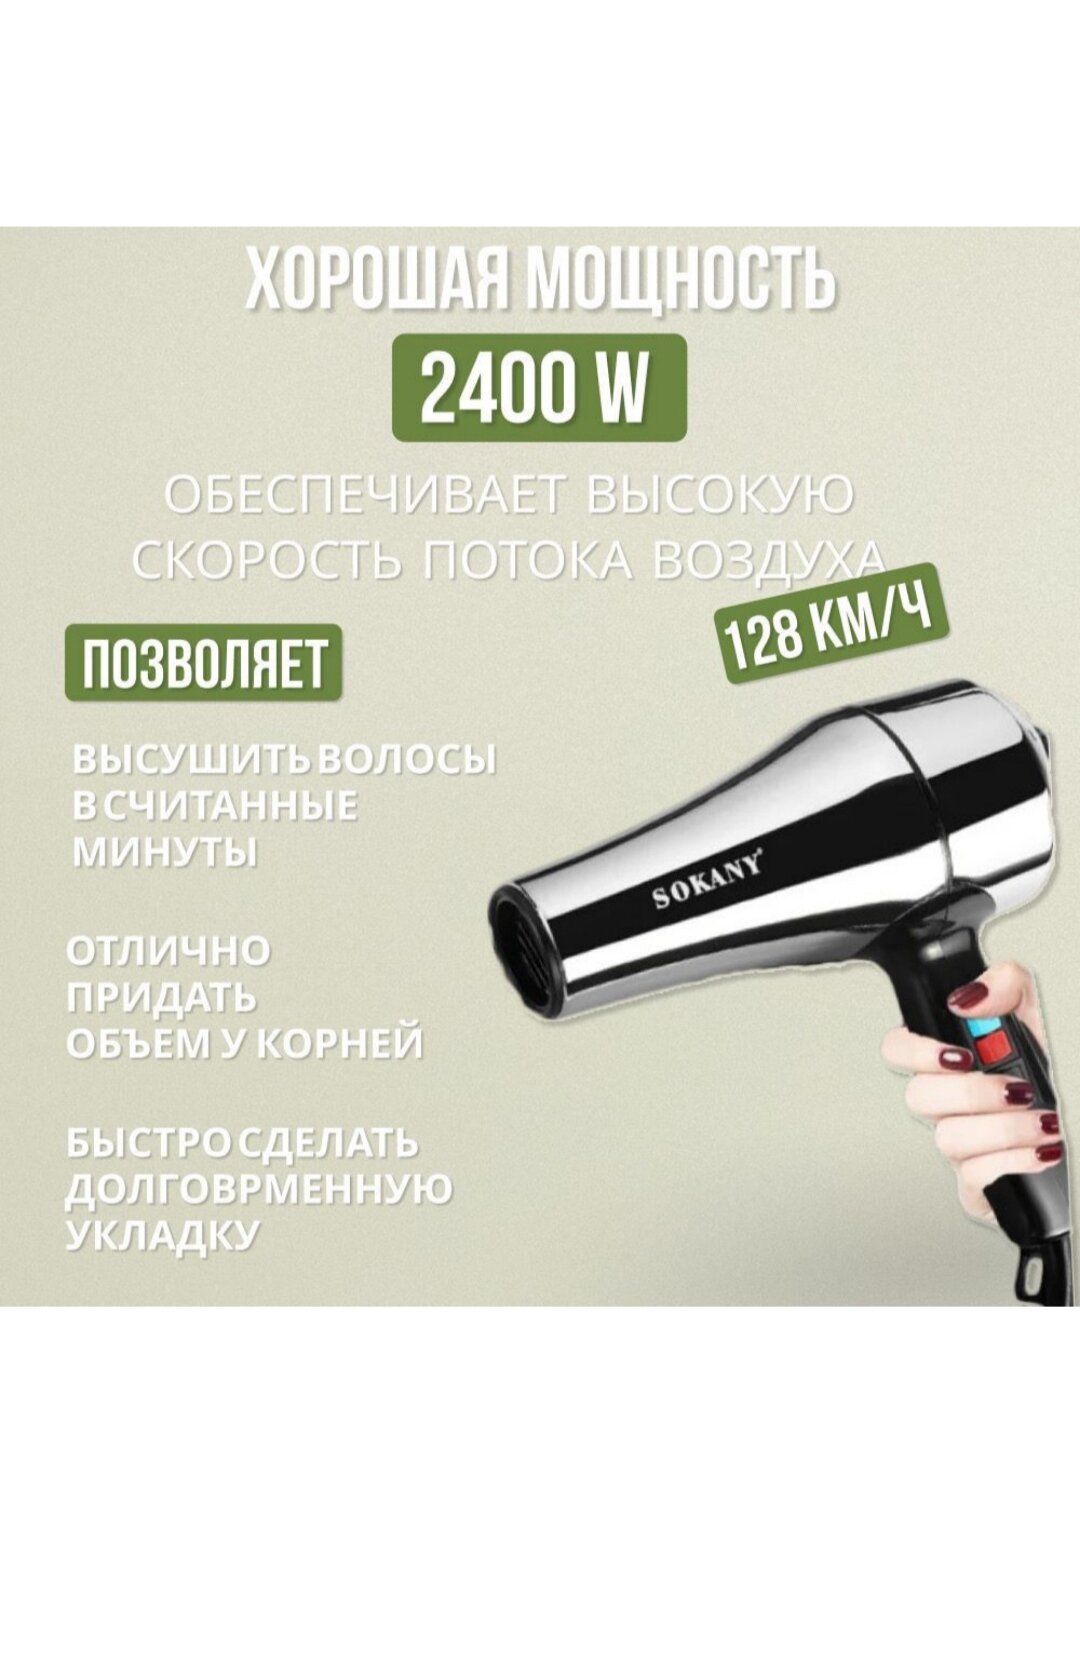 Профессиональный супермощный фен для волос с насадками и ионизацией GORGEOUS HAIR/Эффект быстрой сушки /Мощность 2400 Вт/Sokany MD-3000 - фотография № 6